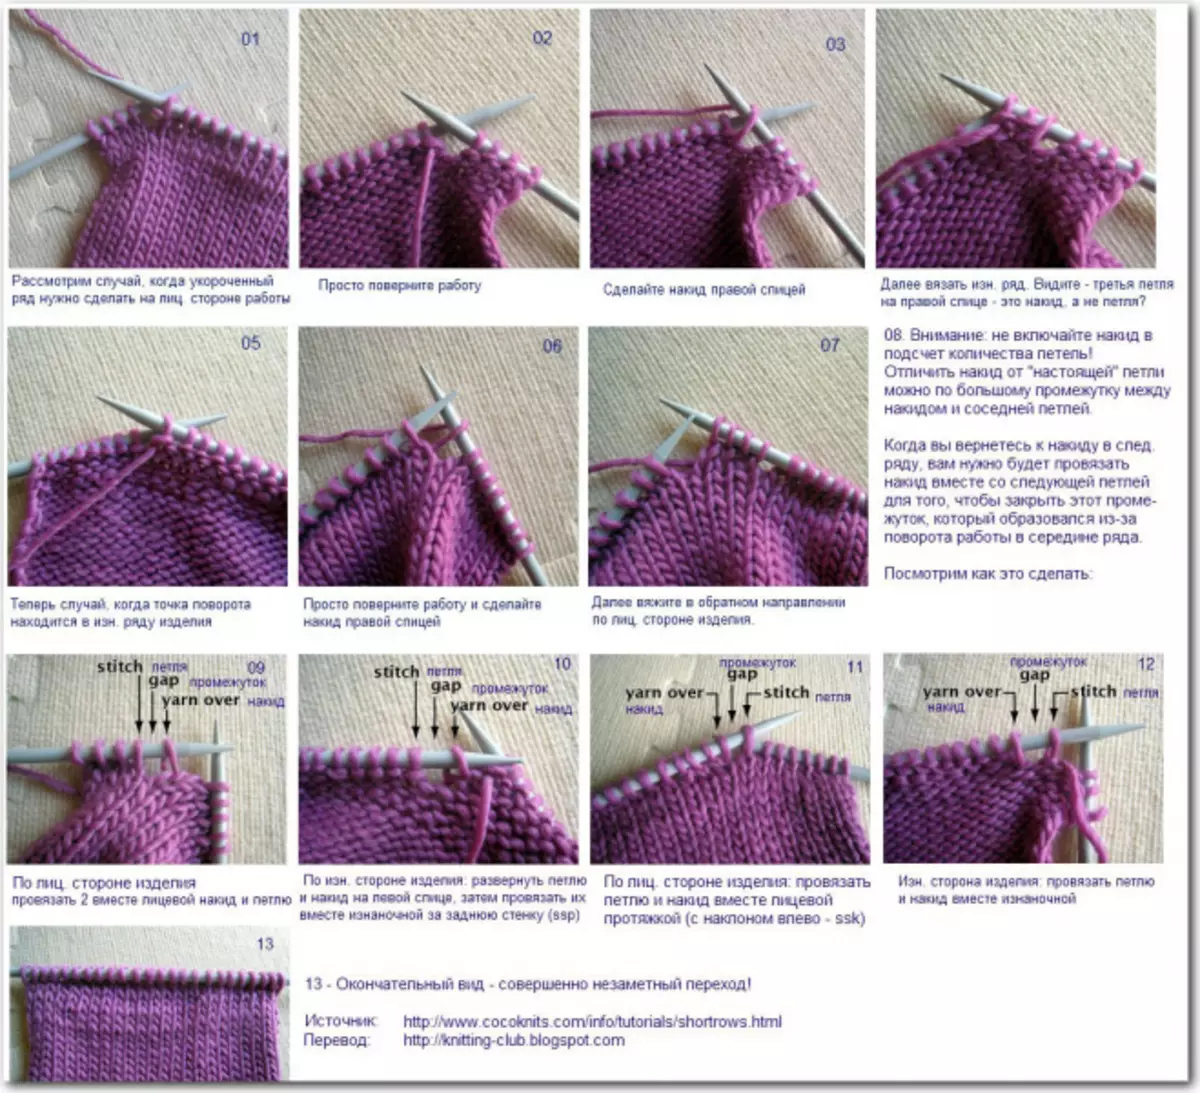 Técnica de tricotar: clase mestra con esquemas